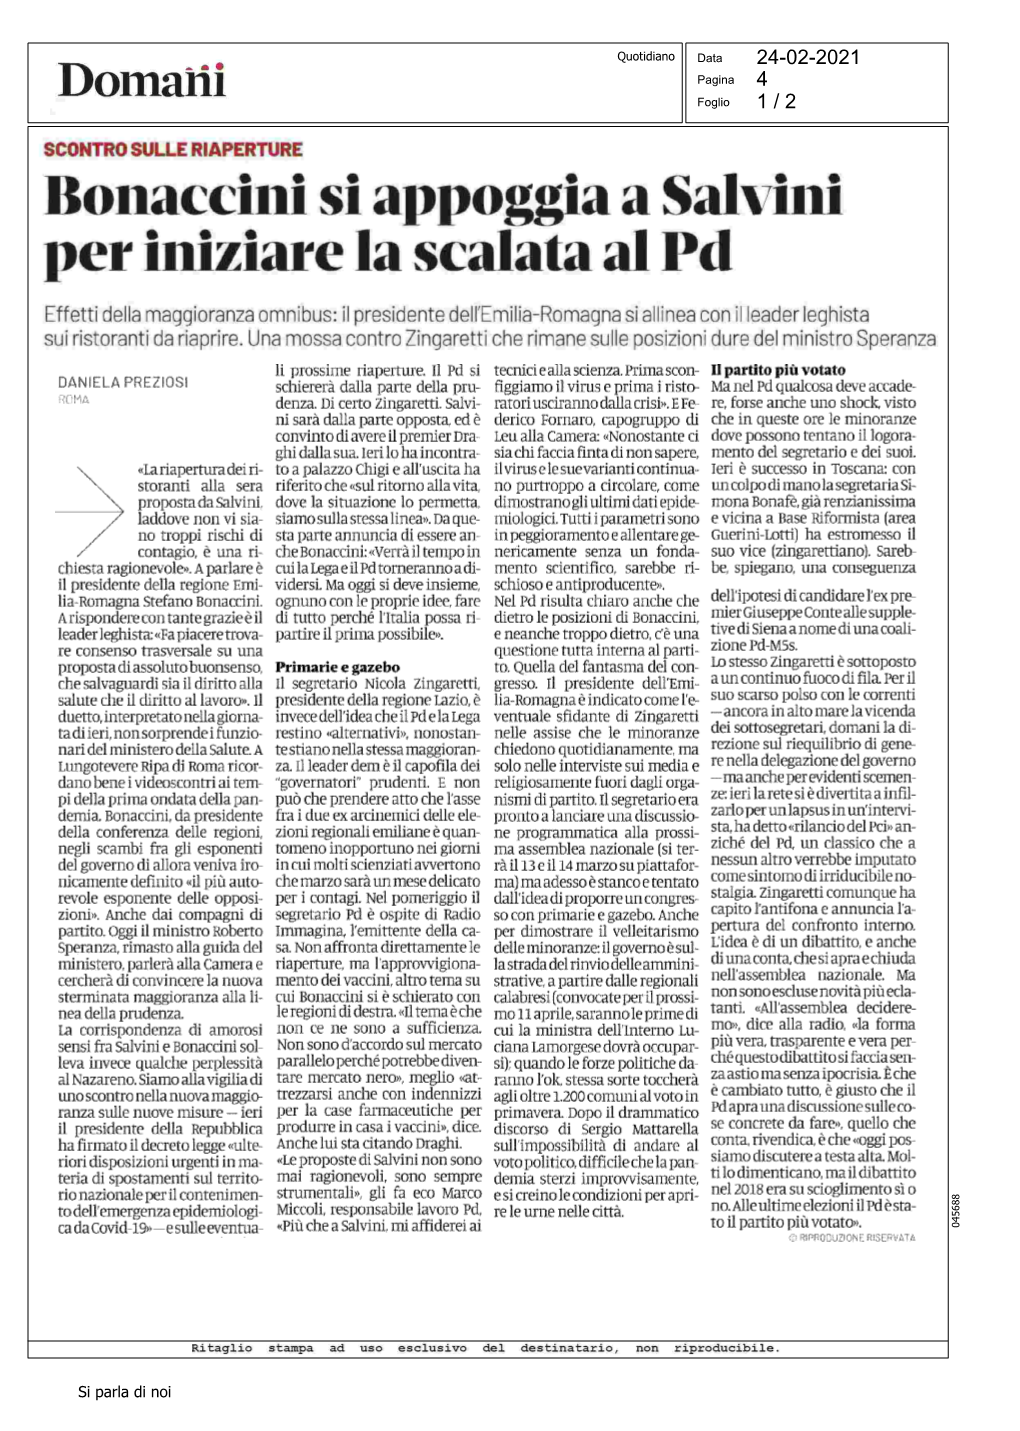 Bonaccini Si Appoggia a Salvini Per Iniziare La Scalata Al Pd